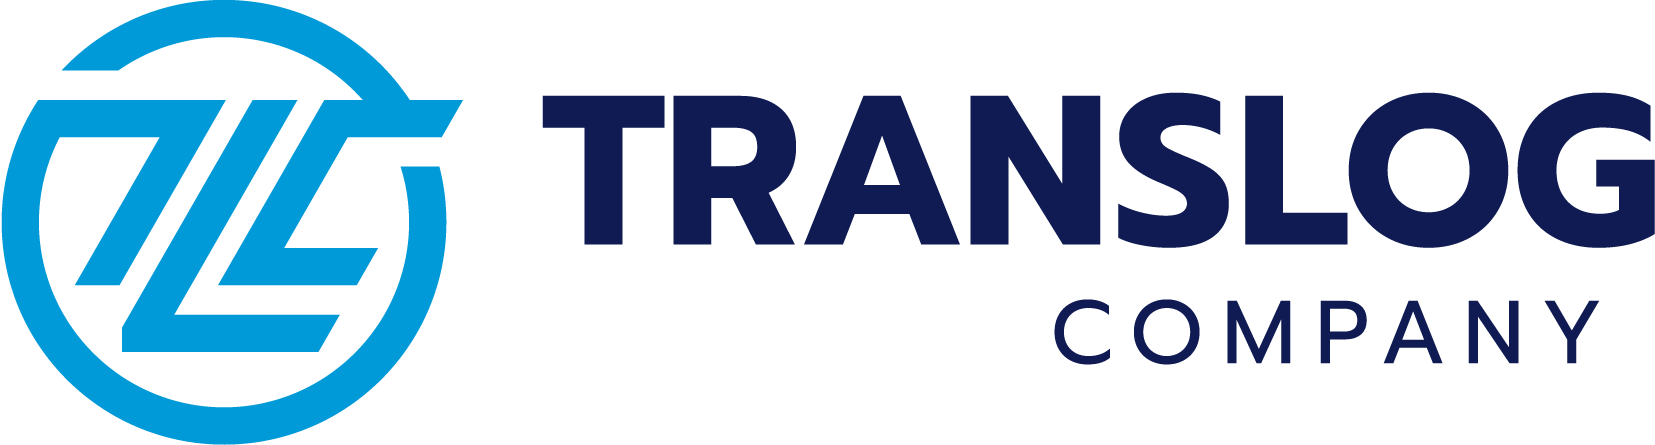 Translog Company | Versandlösungen, die Ihren Anforderungen entsprechen